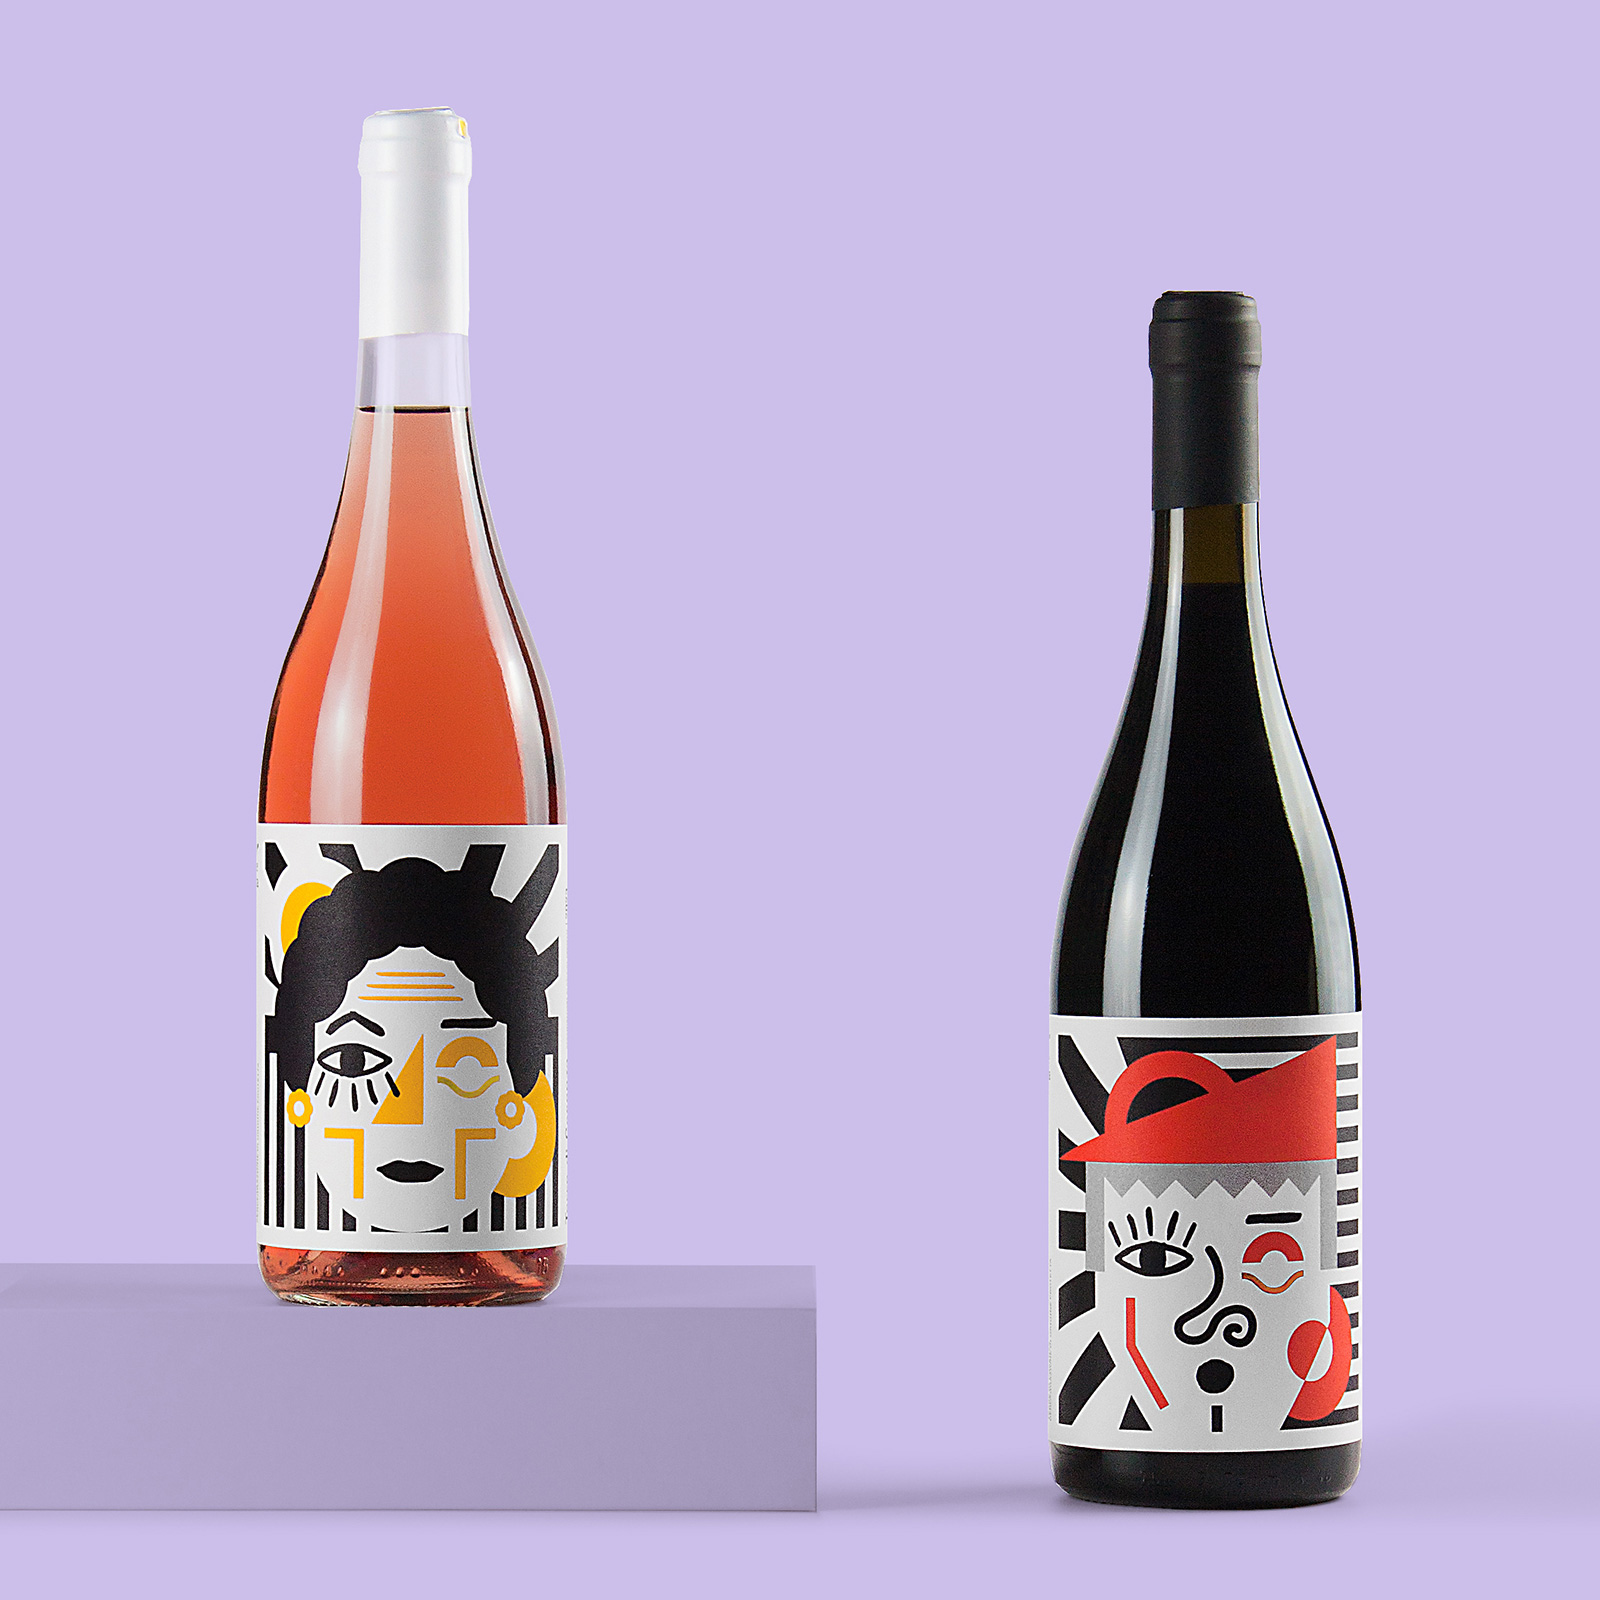 Numeroquattro’s Wine Label Designs for Terre di Vita that Honouring Family Legacy